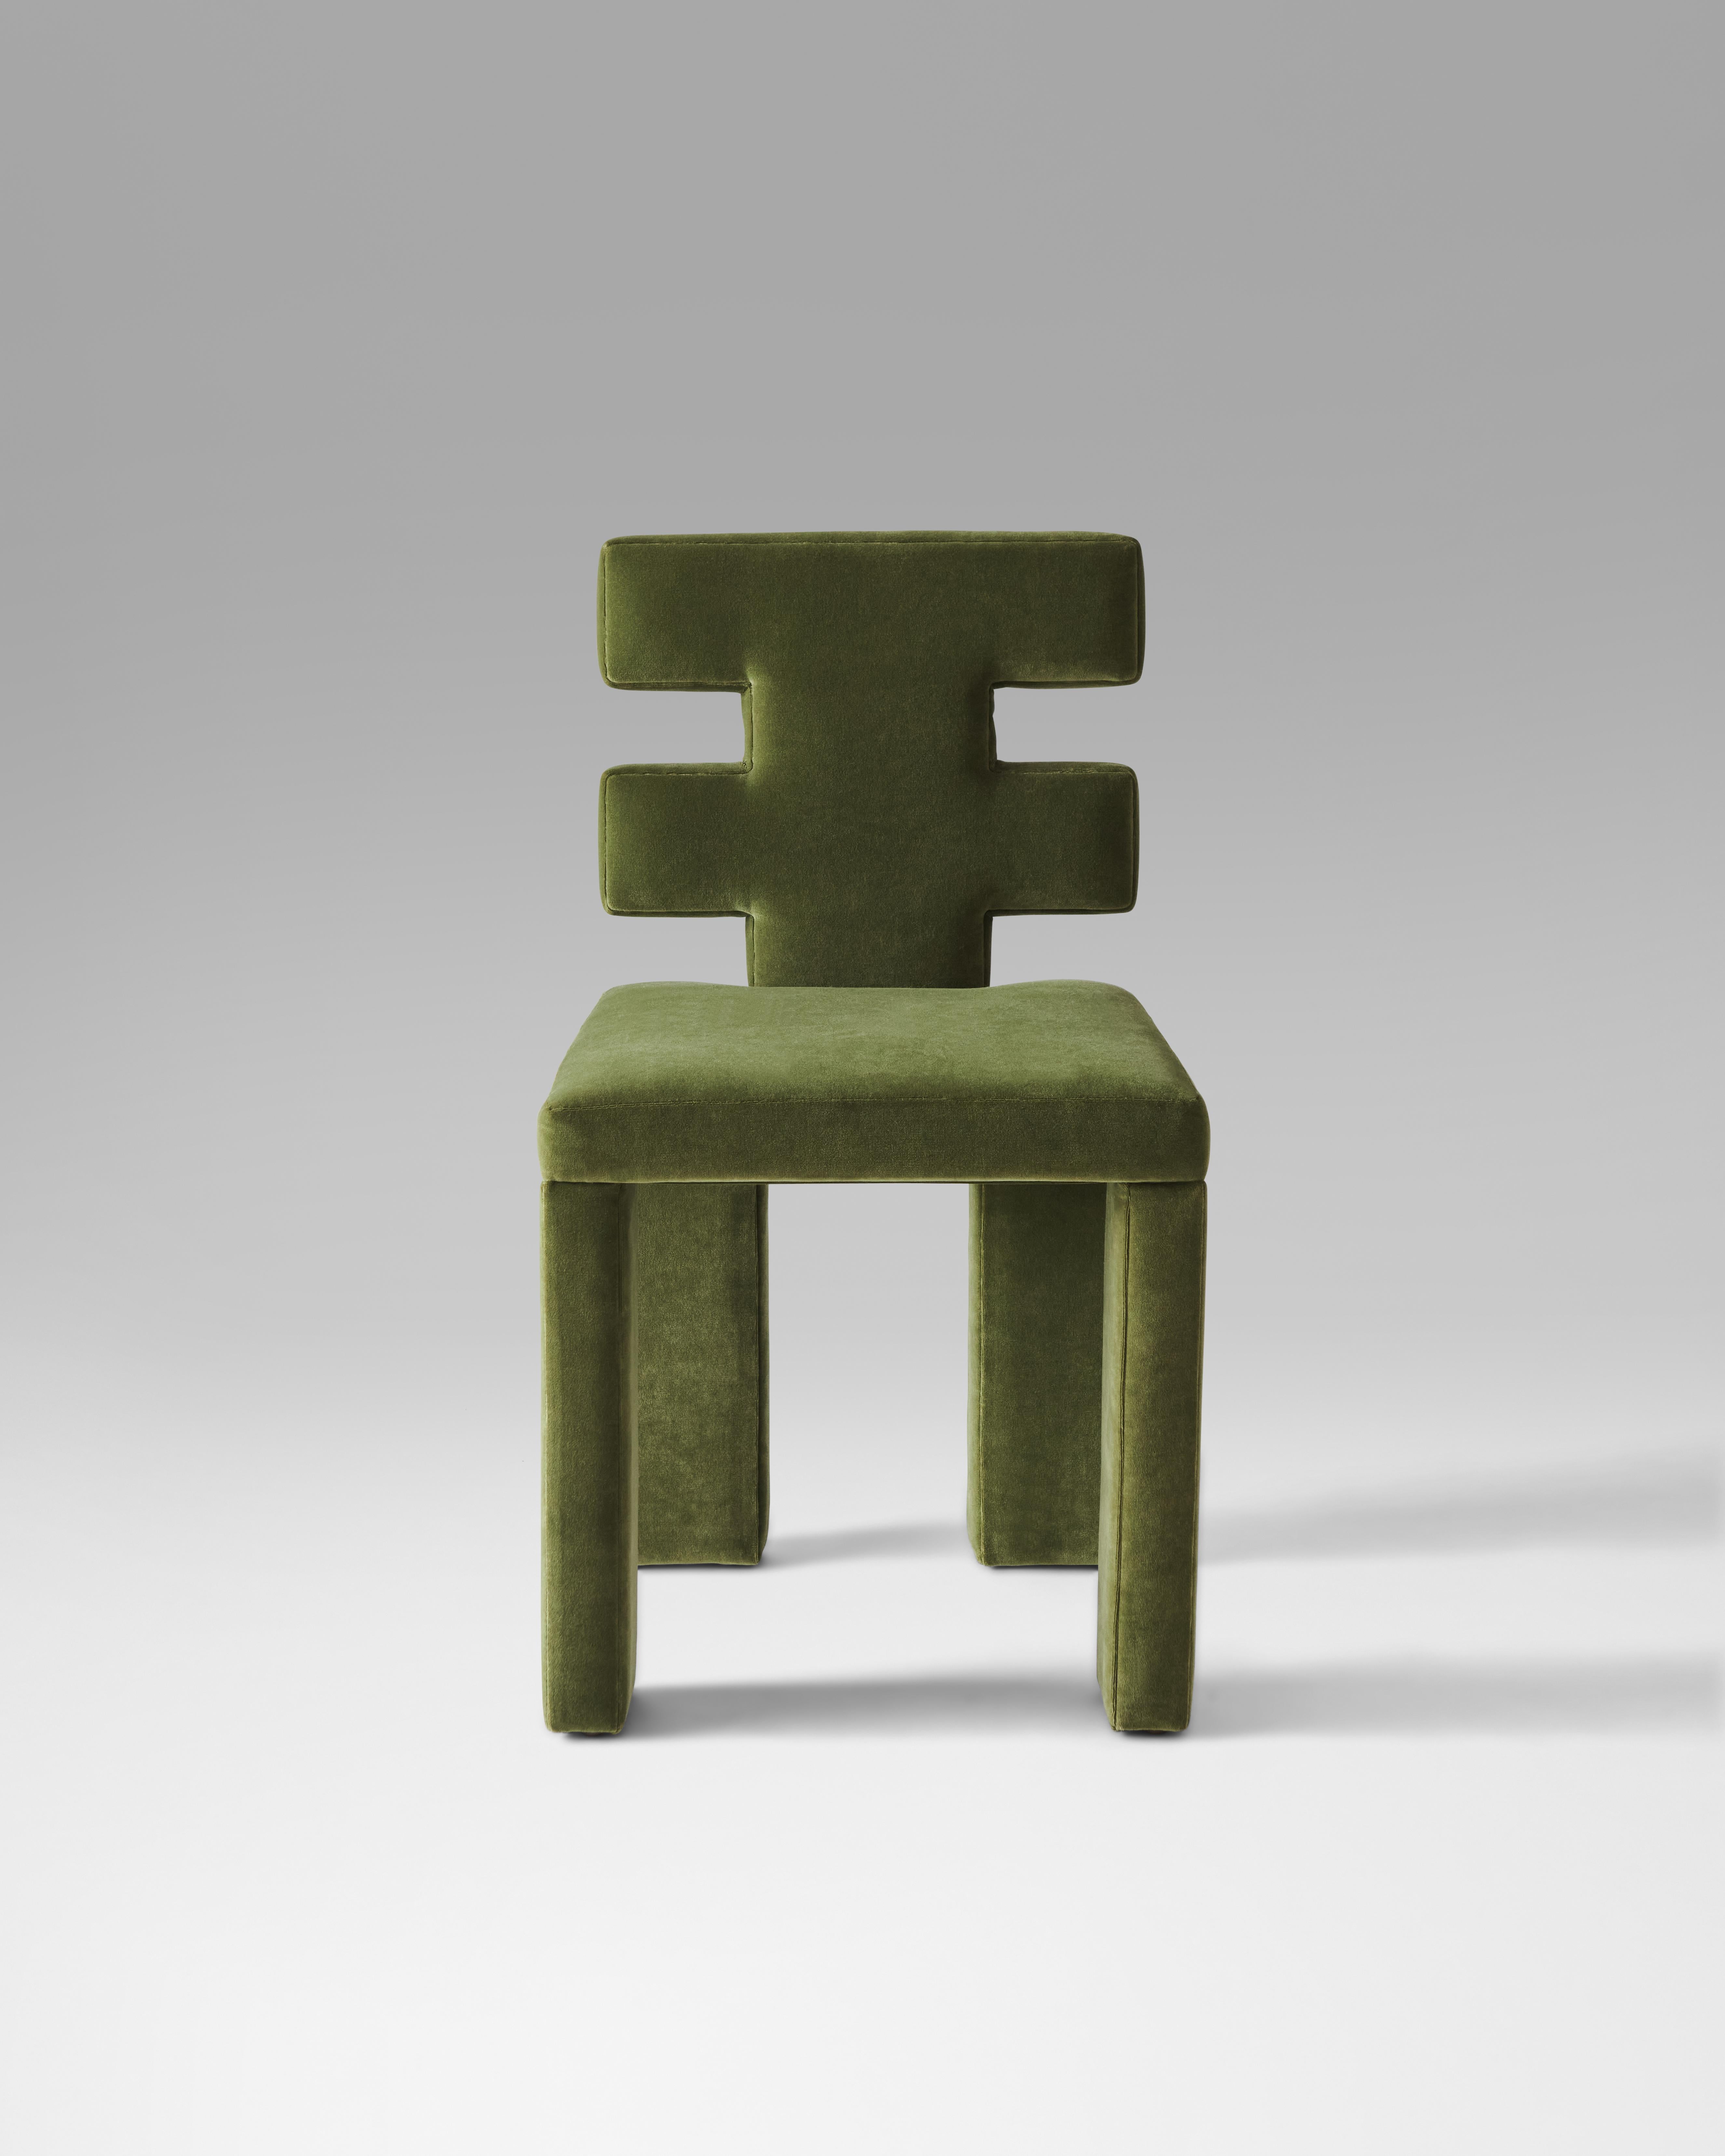 Notre toute nouvelle chaise de salle à manger Estudio Persona. Une assise confortable est associée à un dossier sculptural et à des pieds rembourrés en forme de blocs. Une douceur réconfortante combinée à une robustesse constructiviste, la chaise H